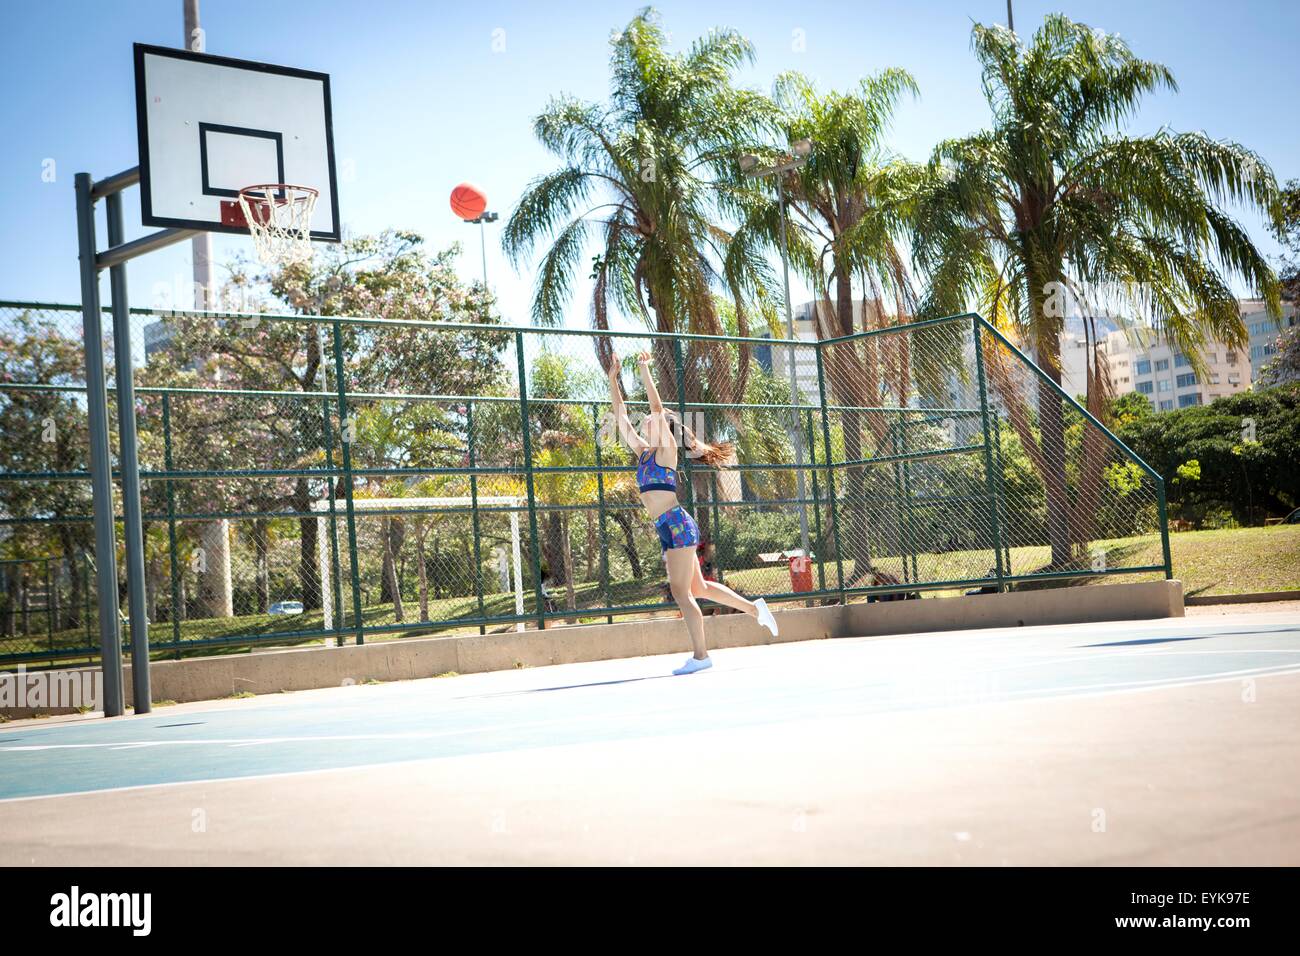 Junge Frau am Basketballfeld im Freien, wirft Ball in Richtung hoop Stockfoto